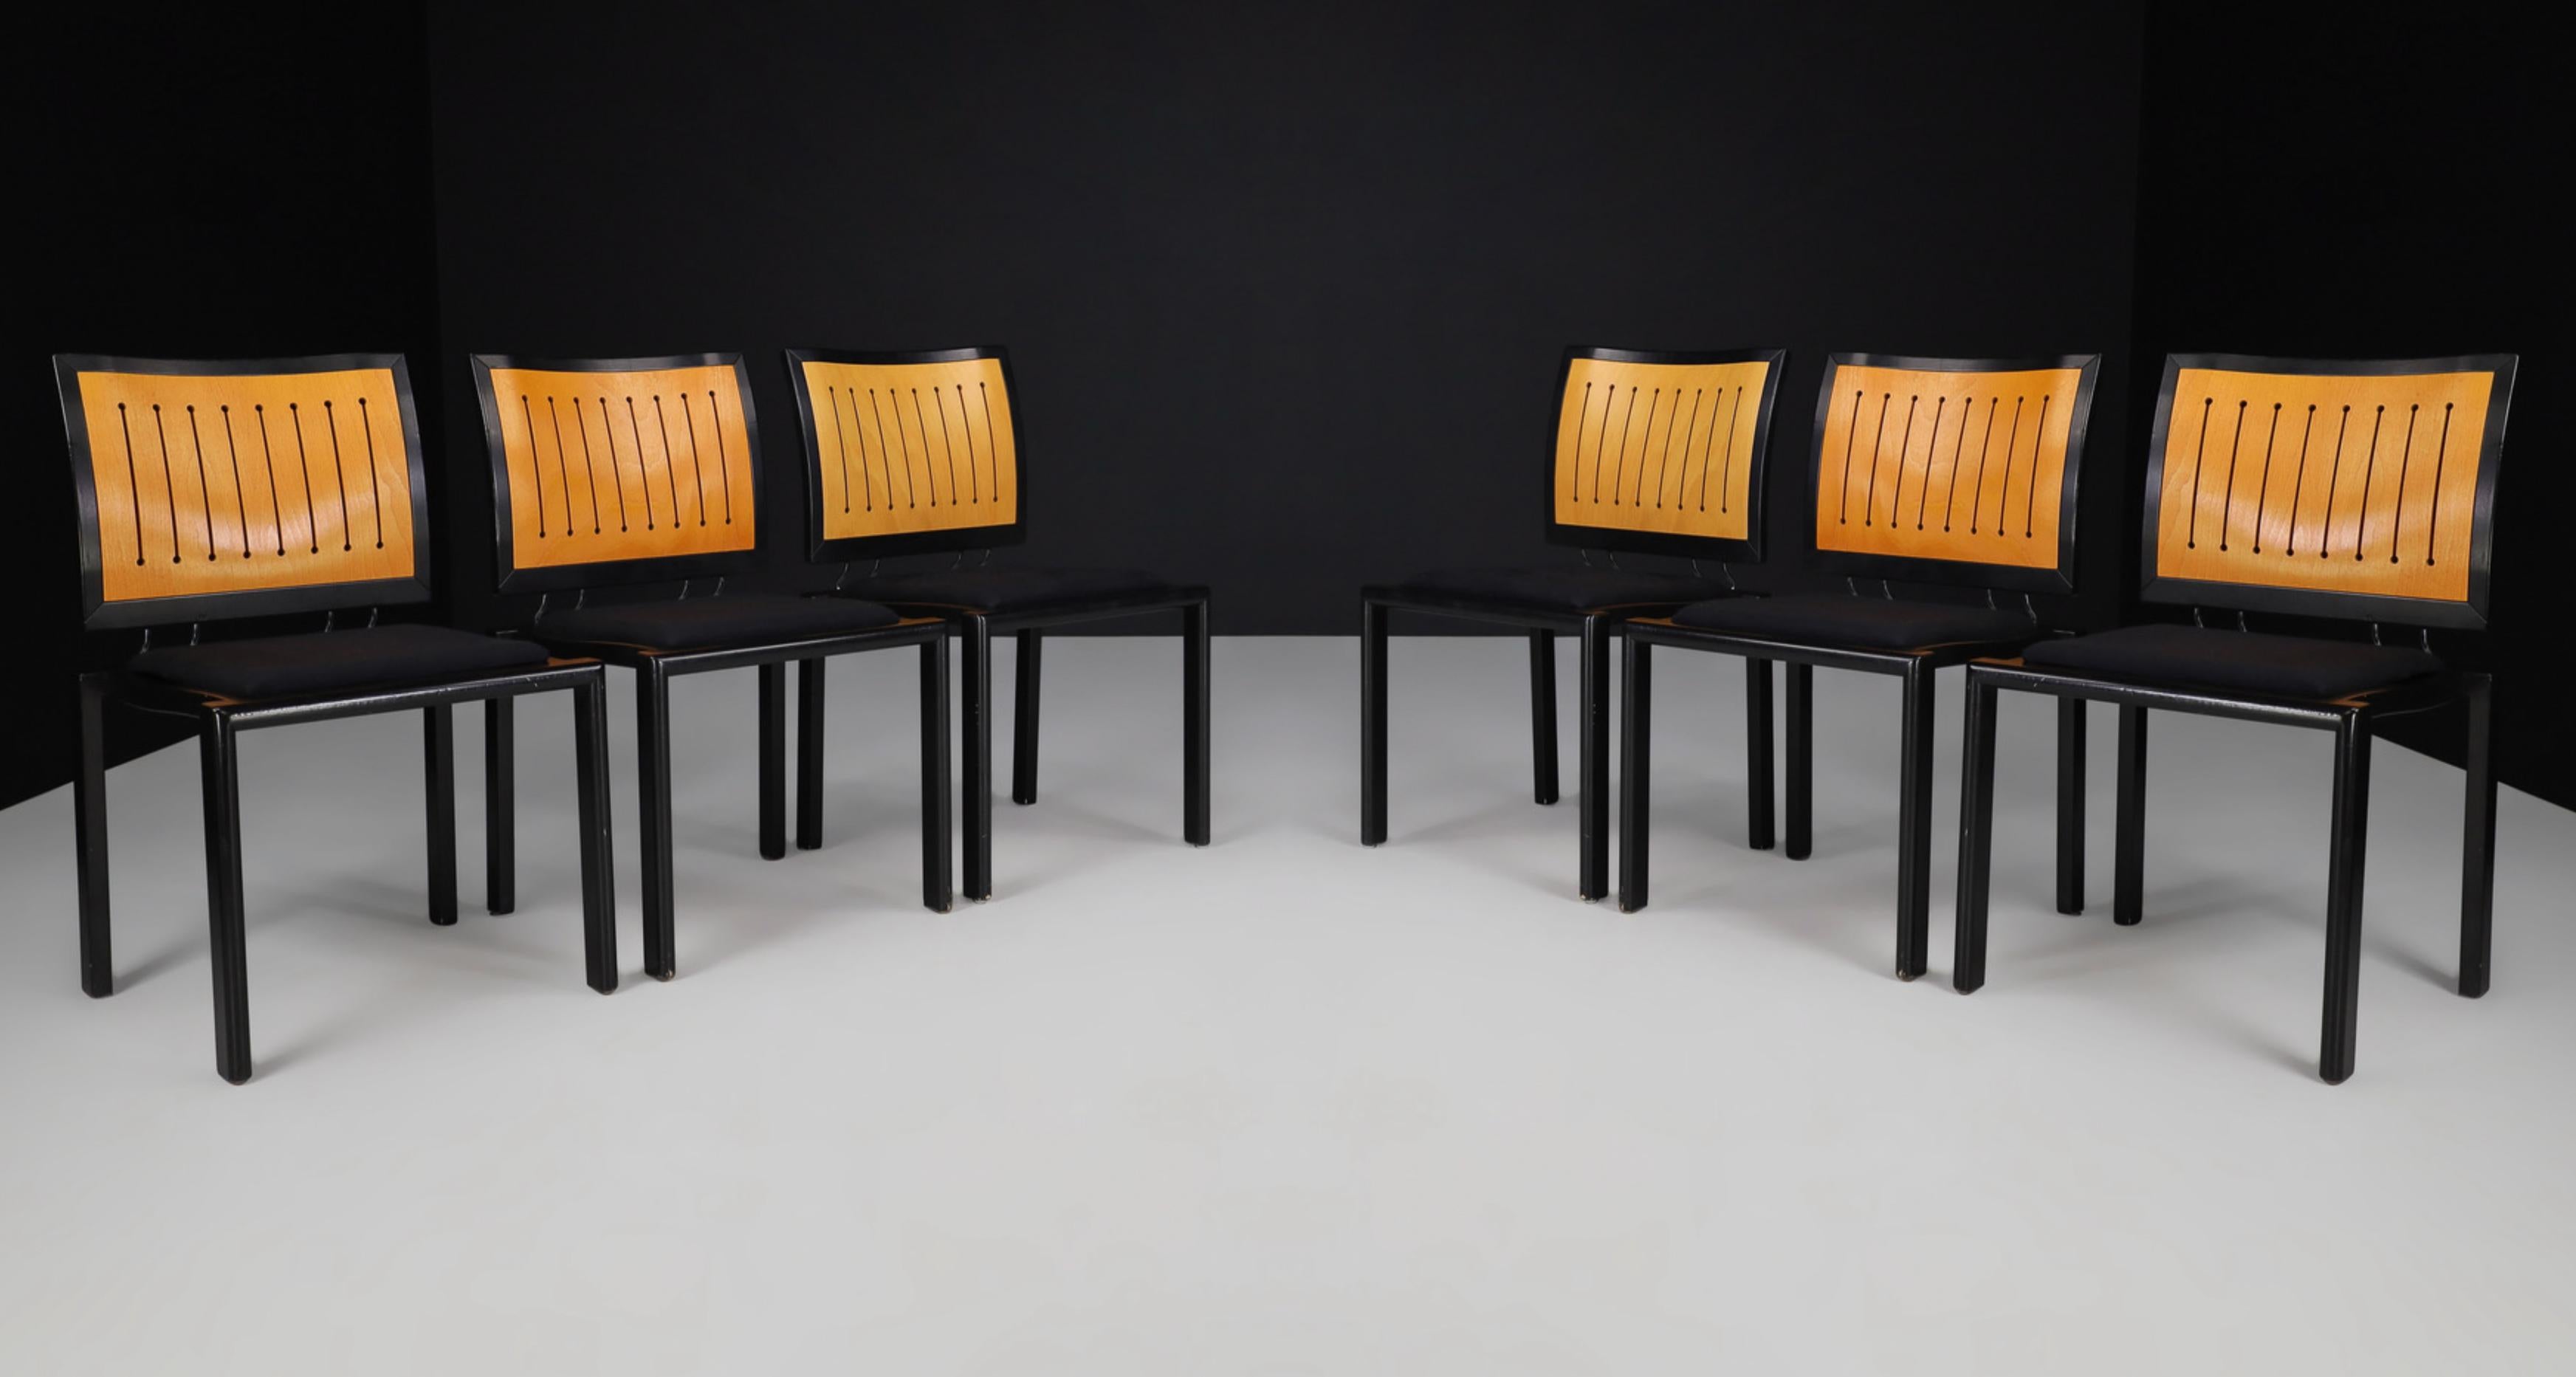 Quadro-Stühle von Bruno Rey & Charles Polin Für Dietiker, Schweiz 1989.

Diese klassischen Stühle wurden in den 1980er Jahren vom renommiertesten Schweizer Designer Bruno Rey in Collaboration mit Charles Polin entworfen und zeichnen sich durch